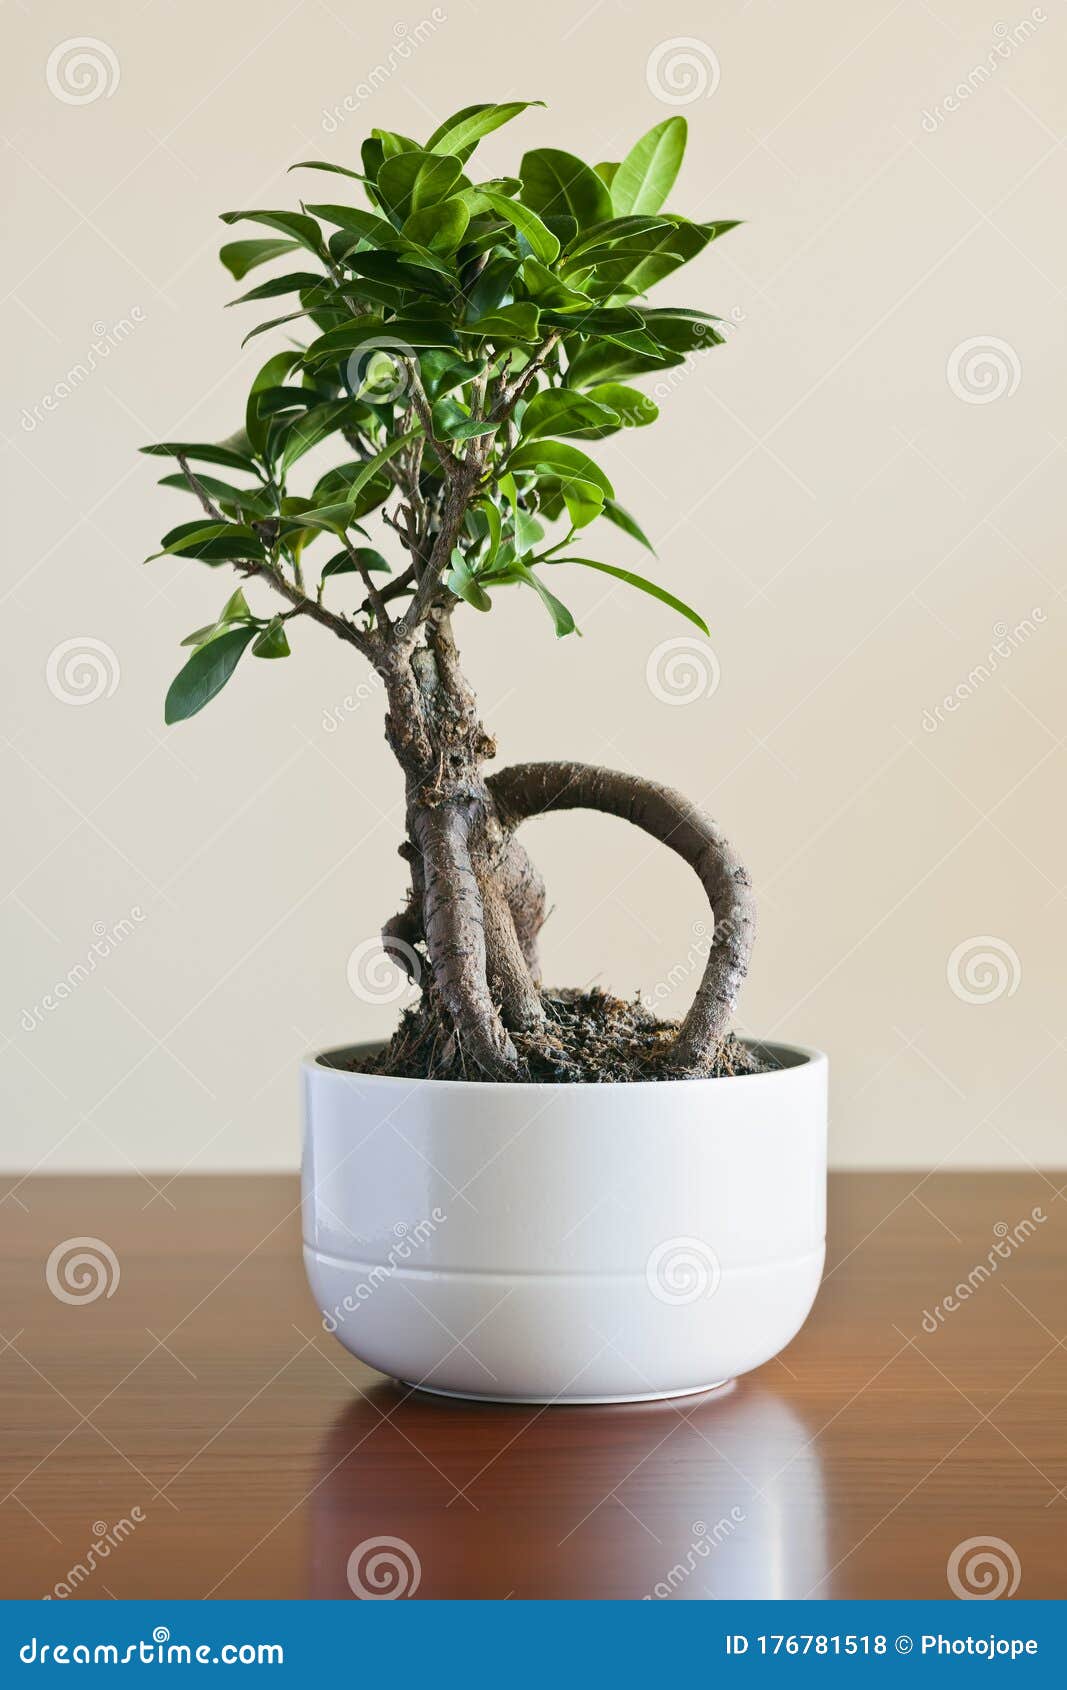 Ficus Ginseng Bonsai on White Plantpot. Ficus Retusa Stock Photo ...